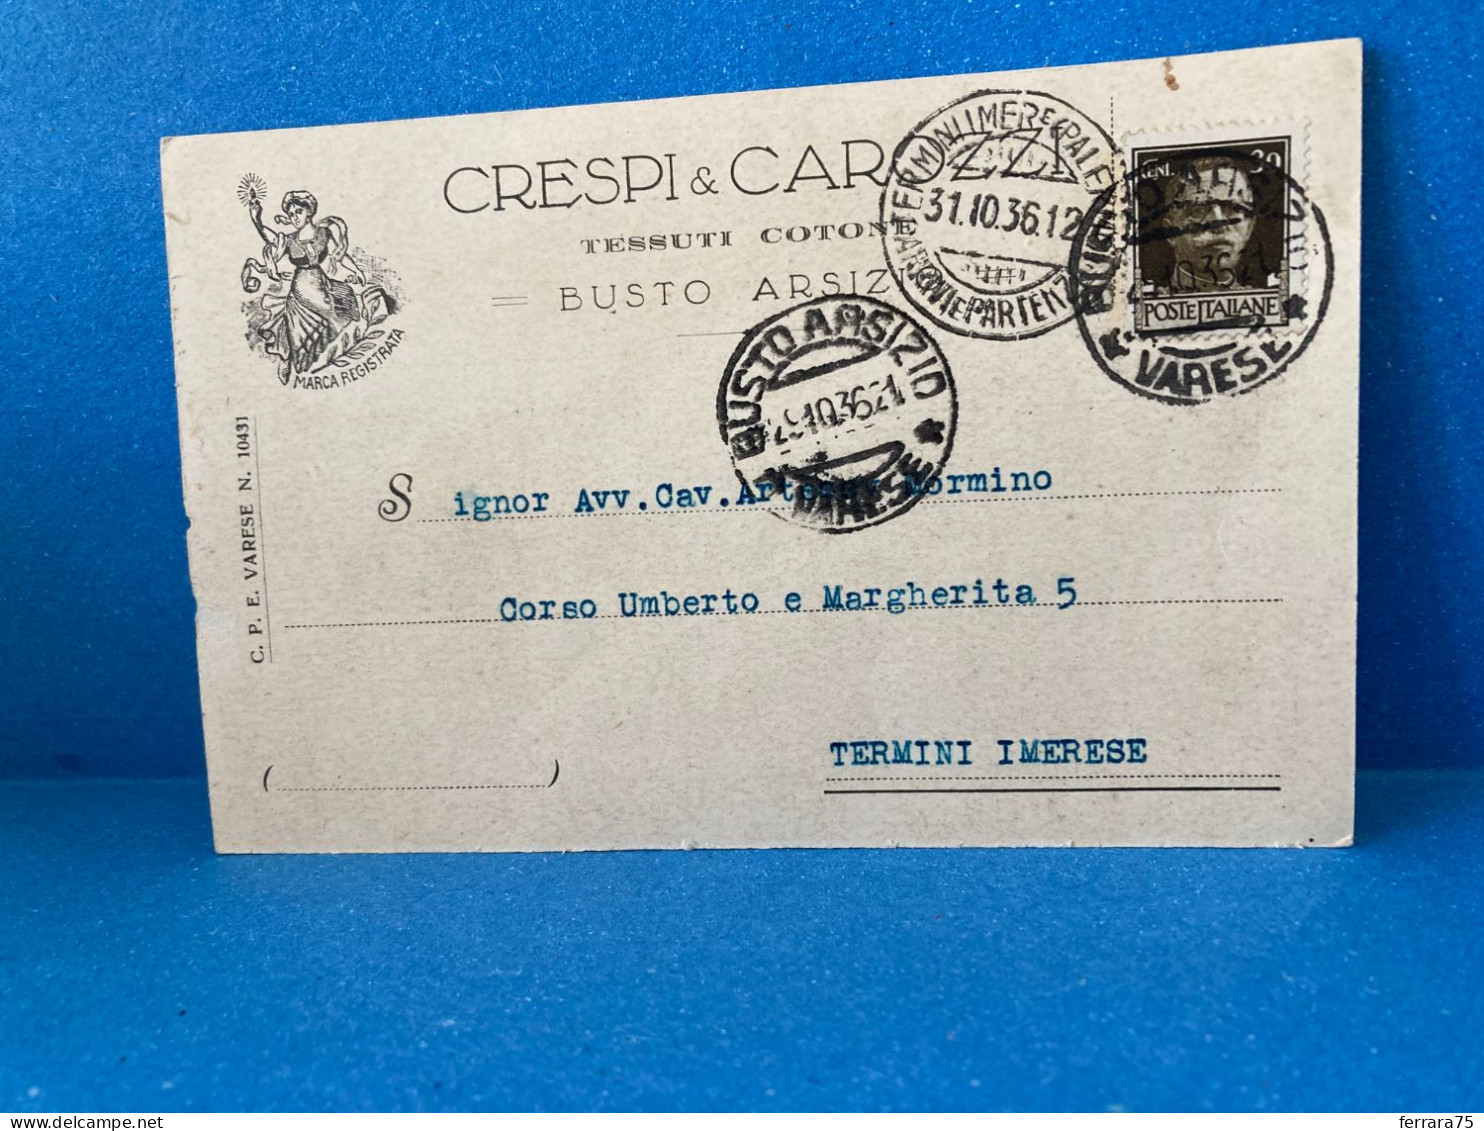 CARTOLINA D'EPOCA CRESPI E CARROZZI TESSUTI  COTONE BUSTO ARSIZIO 1936. - Unclassified